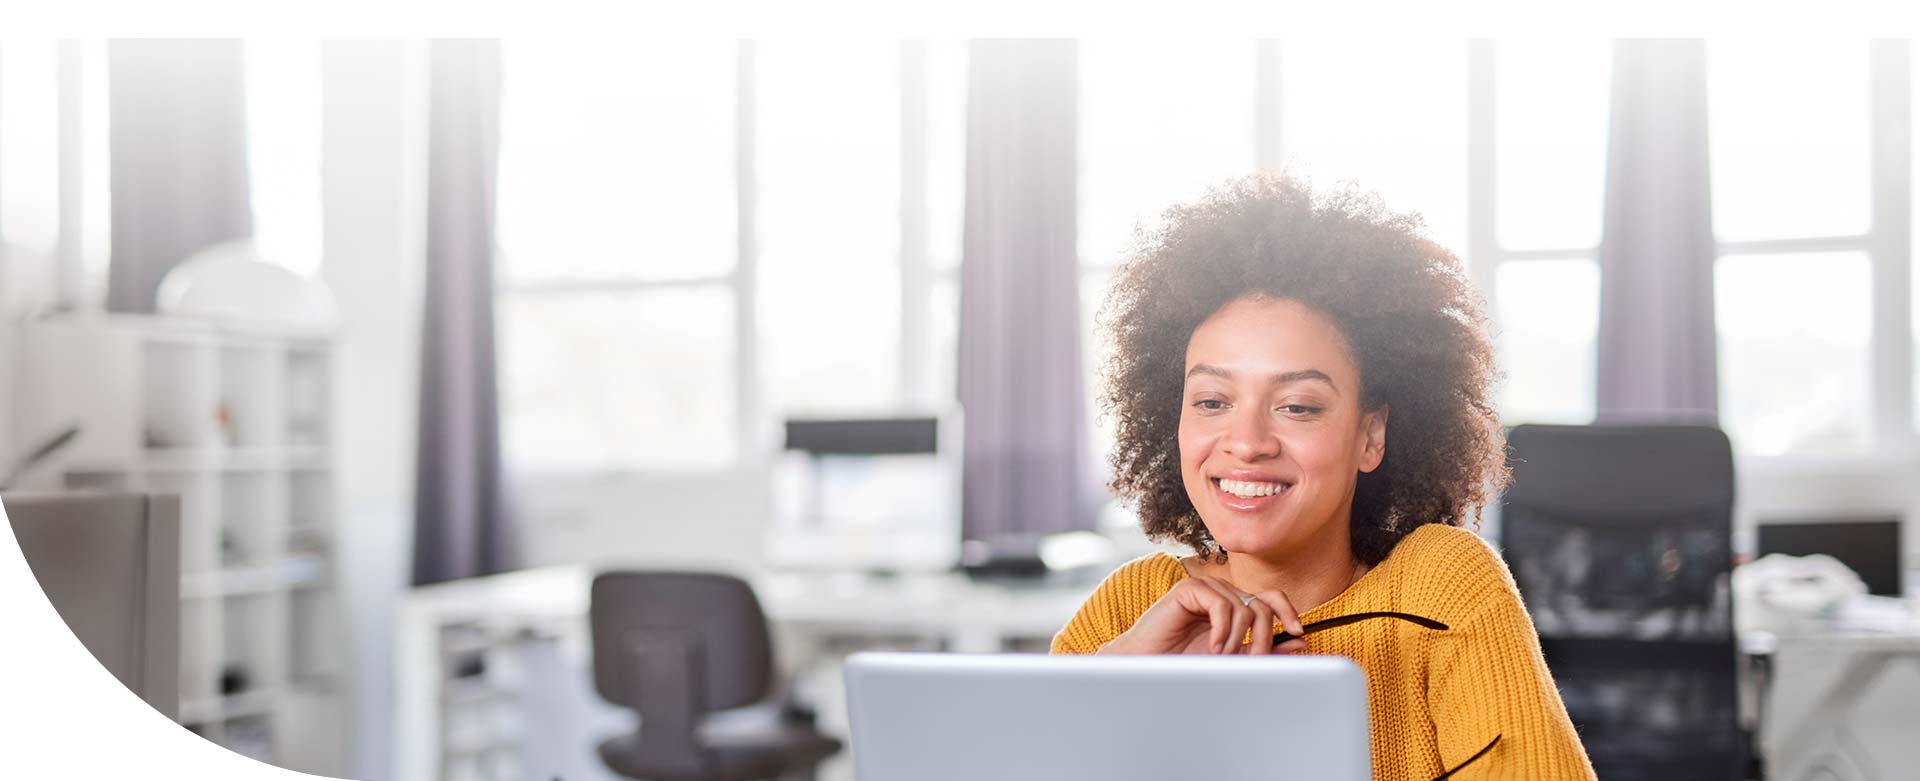 mujer afrodescendiente sonriendo y observando su computadora en la oficina